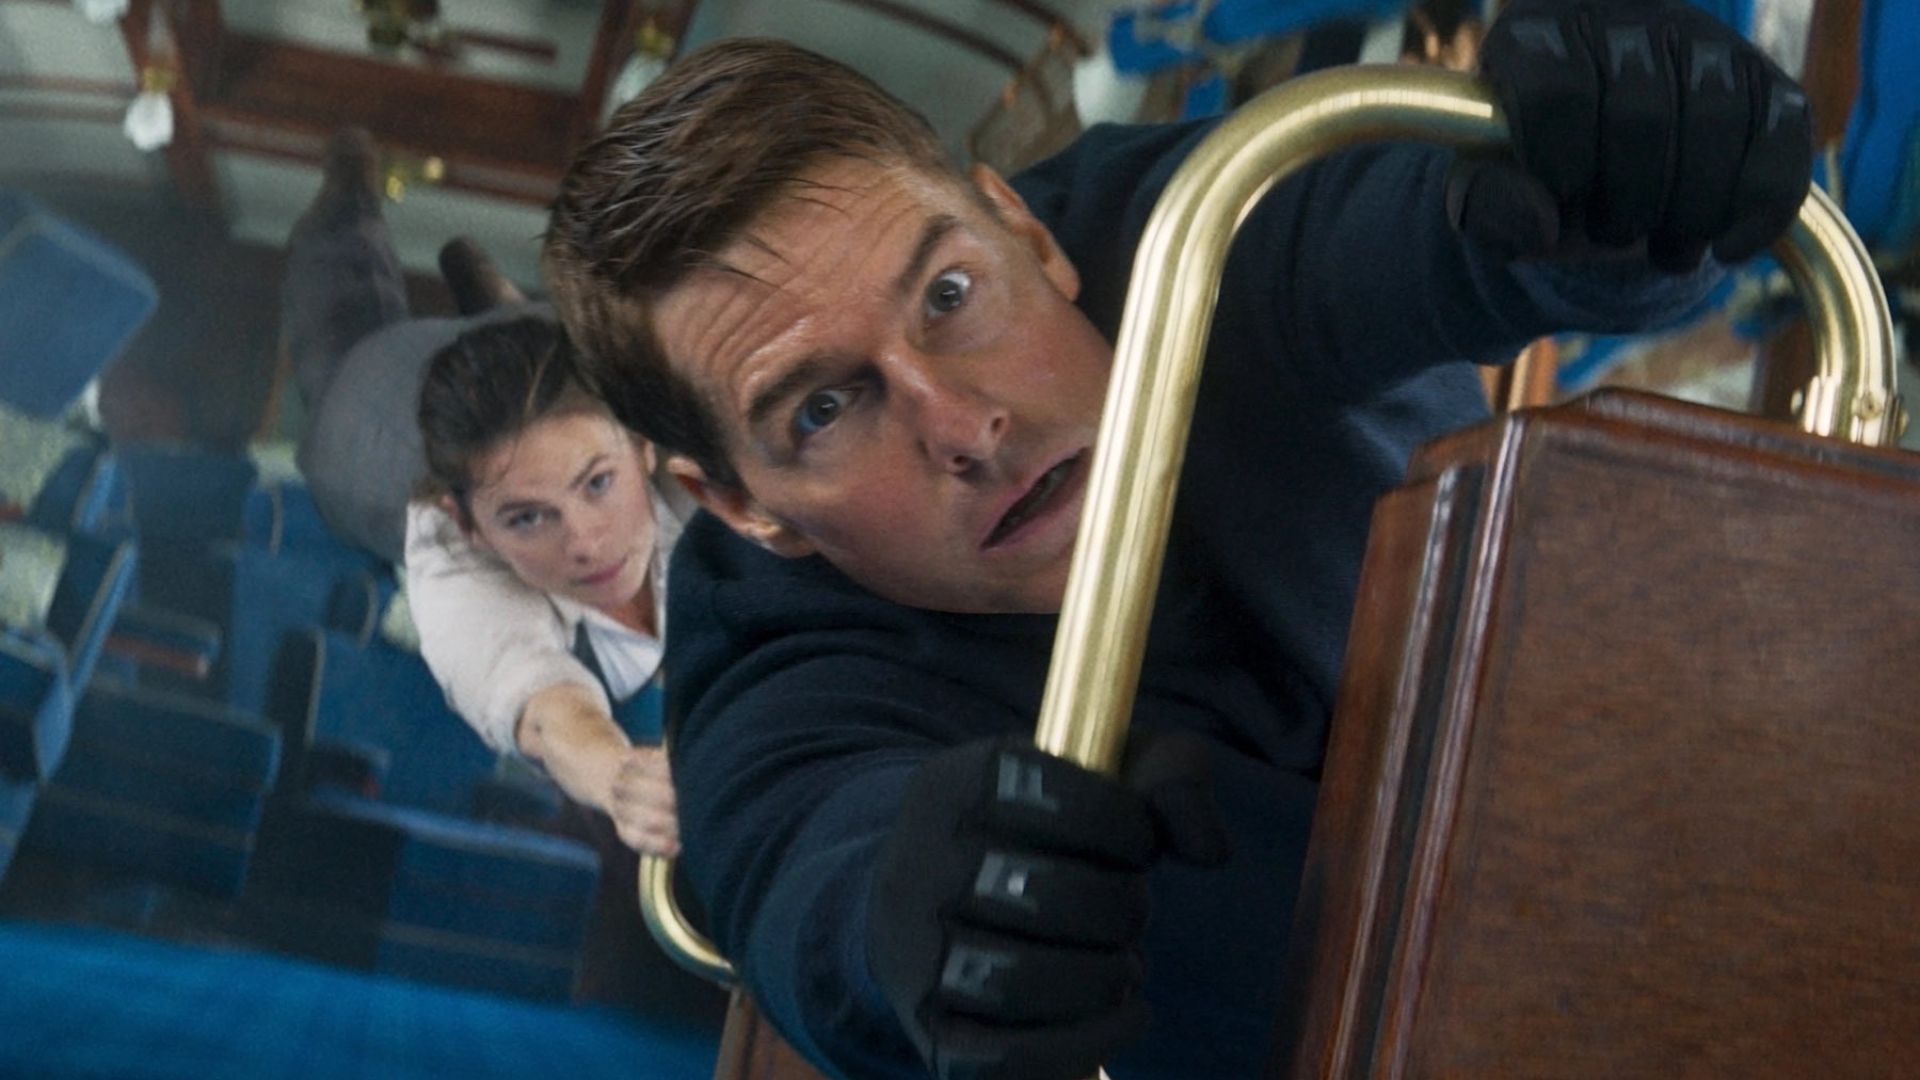 تام کروز و هیلی آتول در صحنه قطار از Mission: Impossible – Dead Reckoning Part One از صندلی واگن قطار در حال سقوط آویزان شده اند.